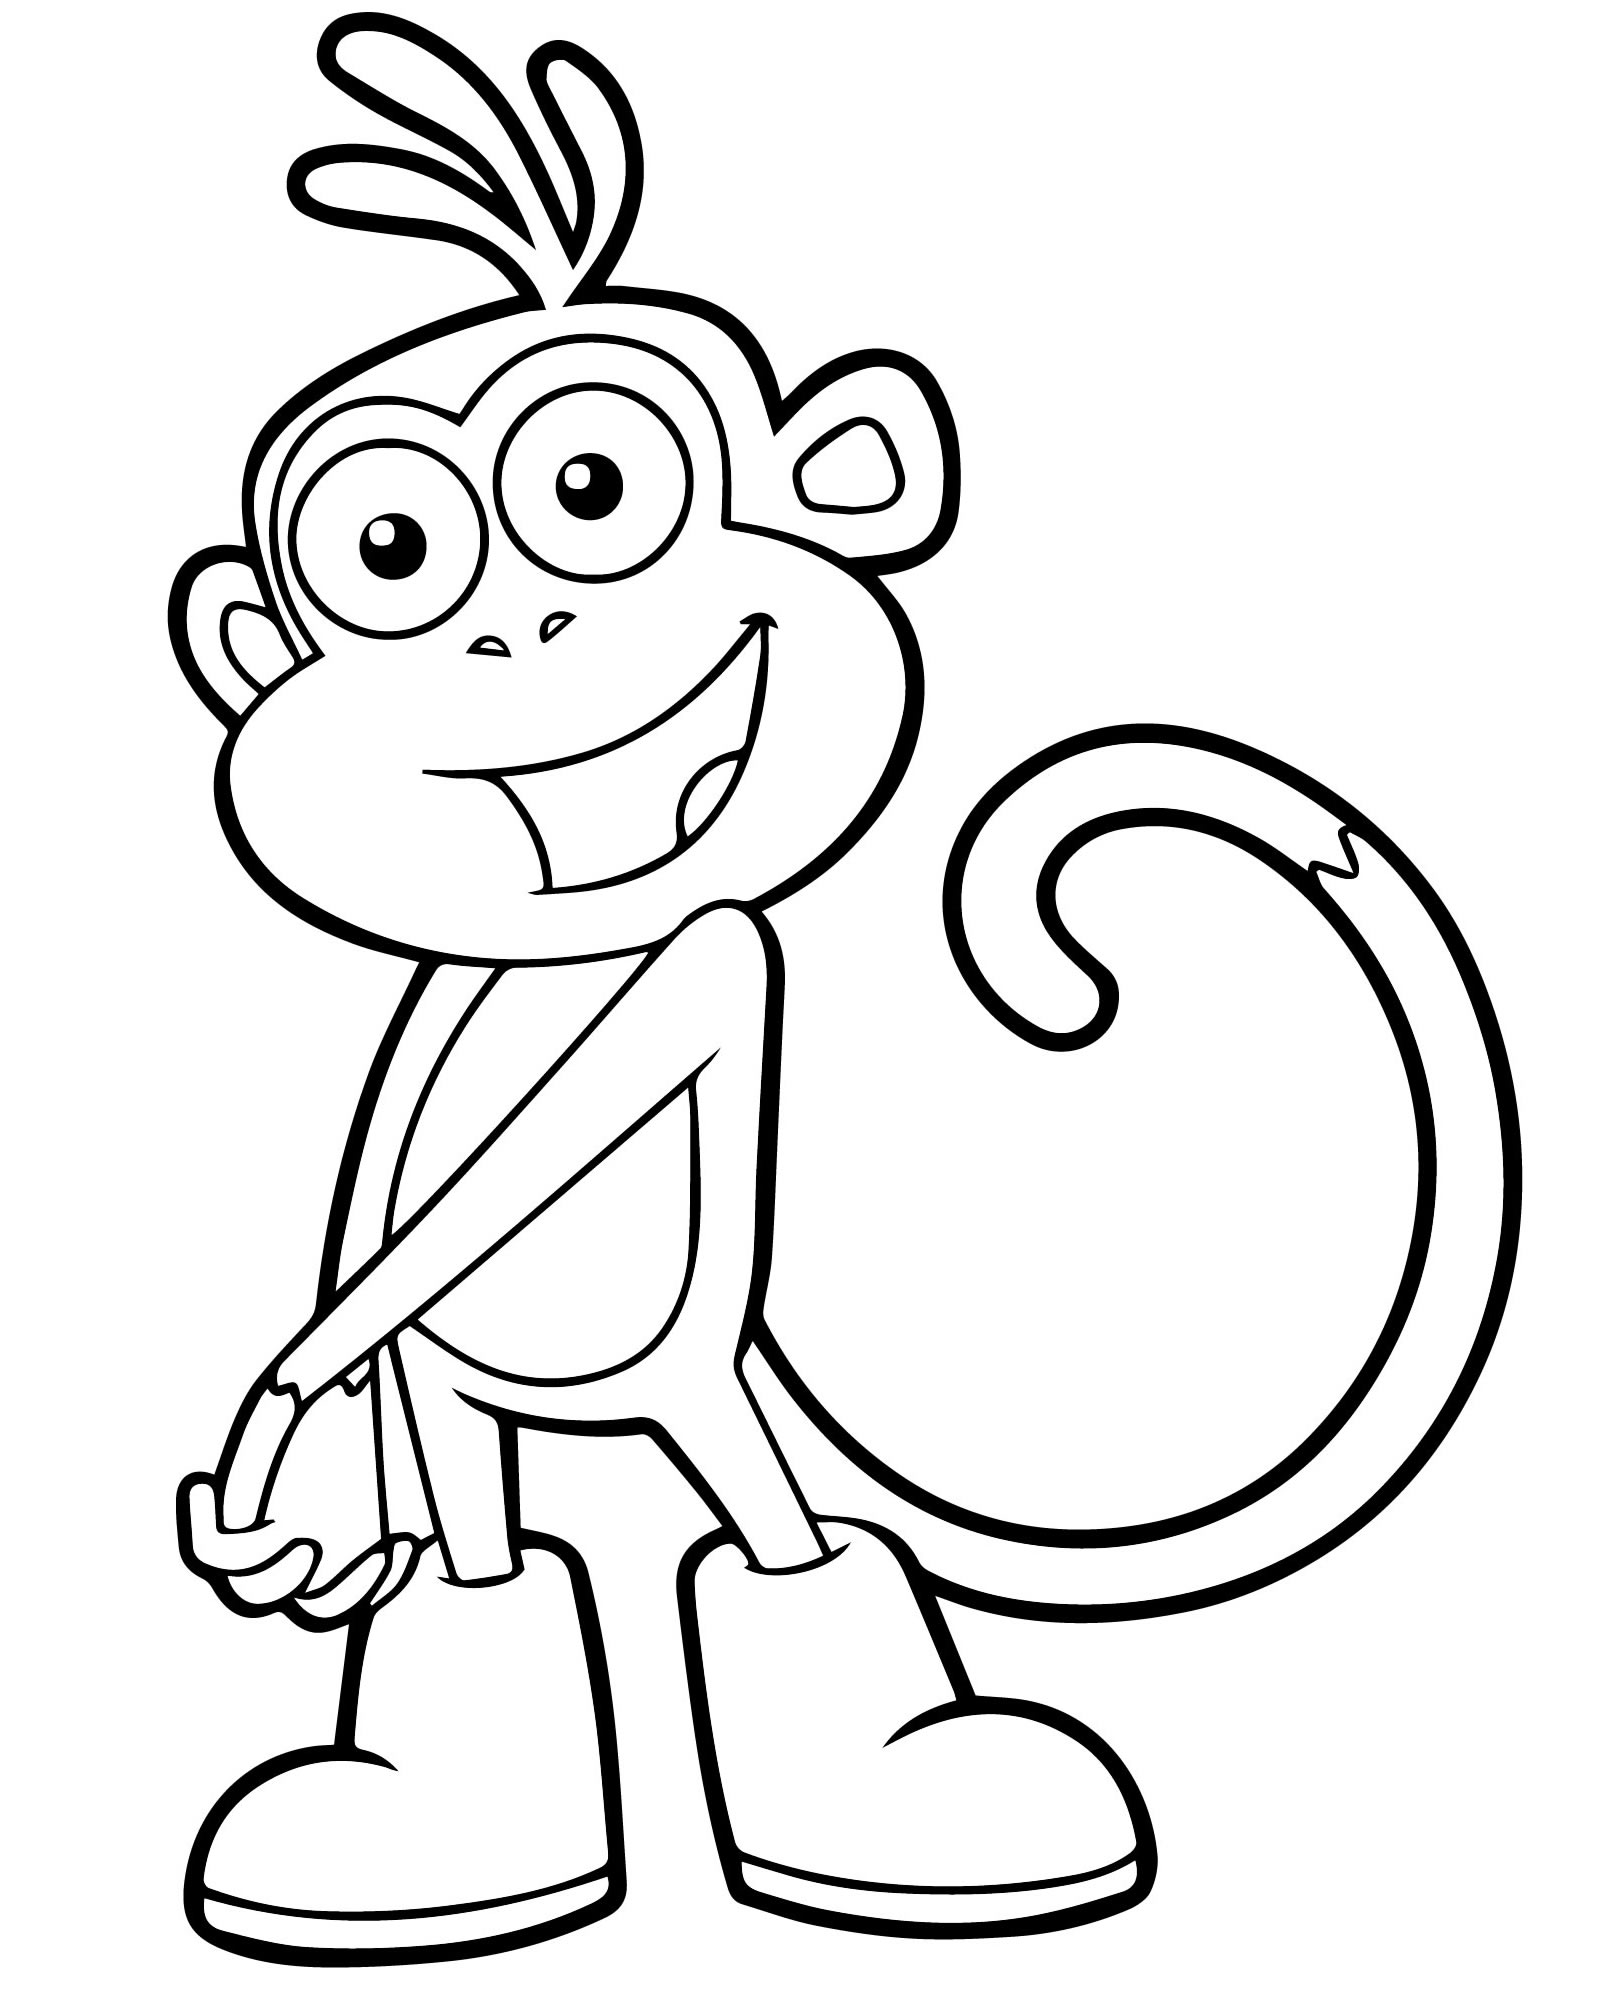 Распечатать раскраски обезьянок. Раскраска обезьяна для детей